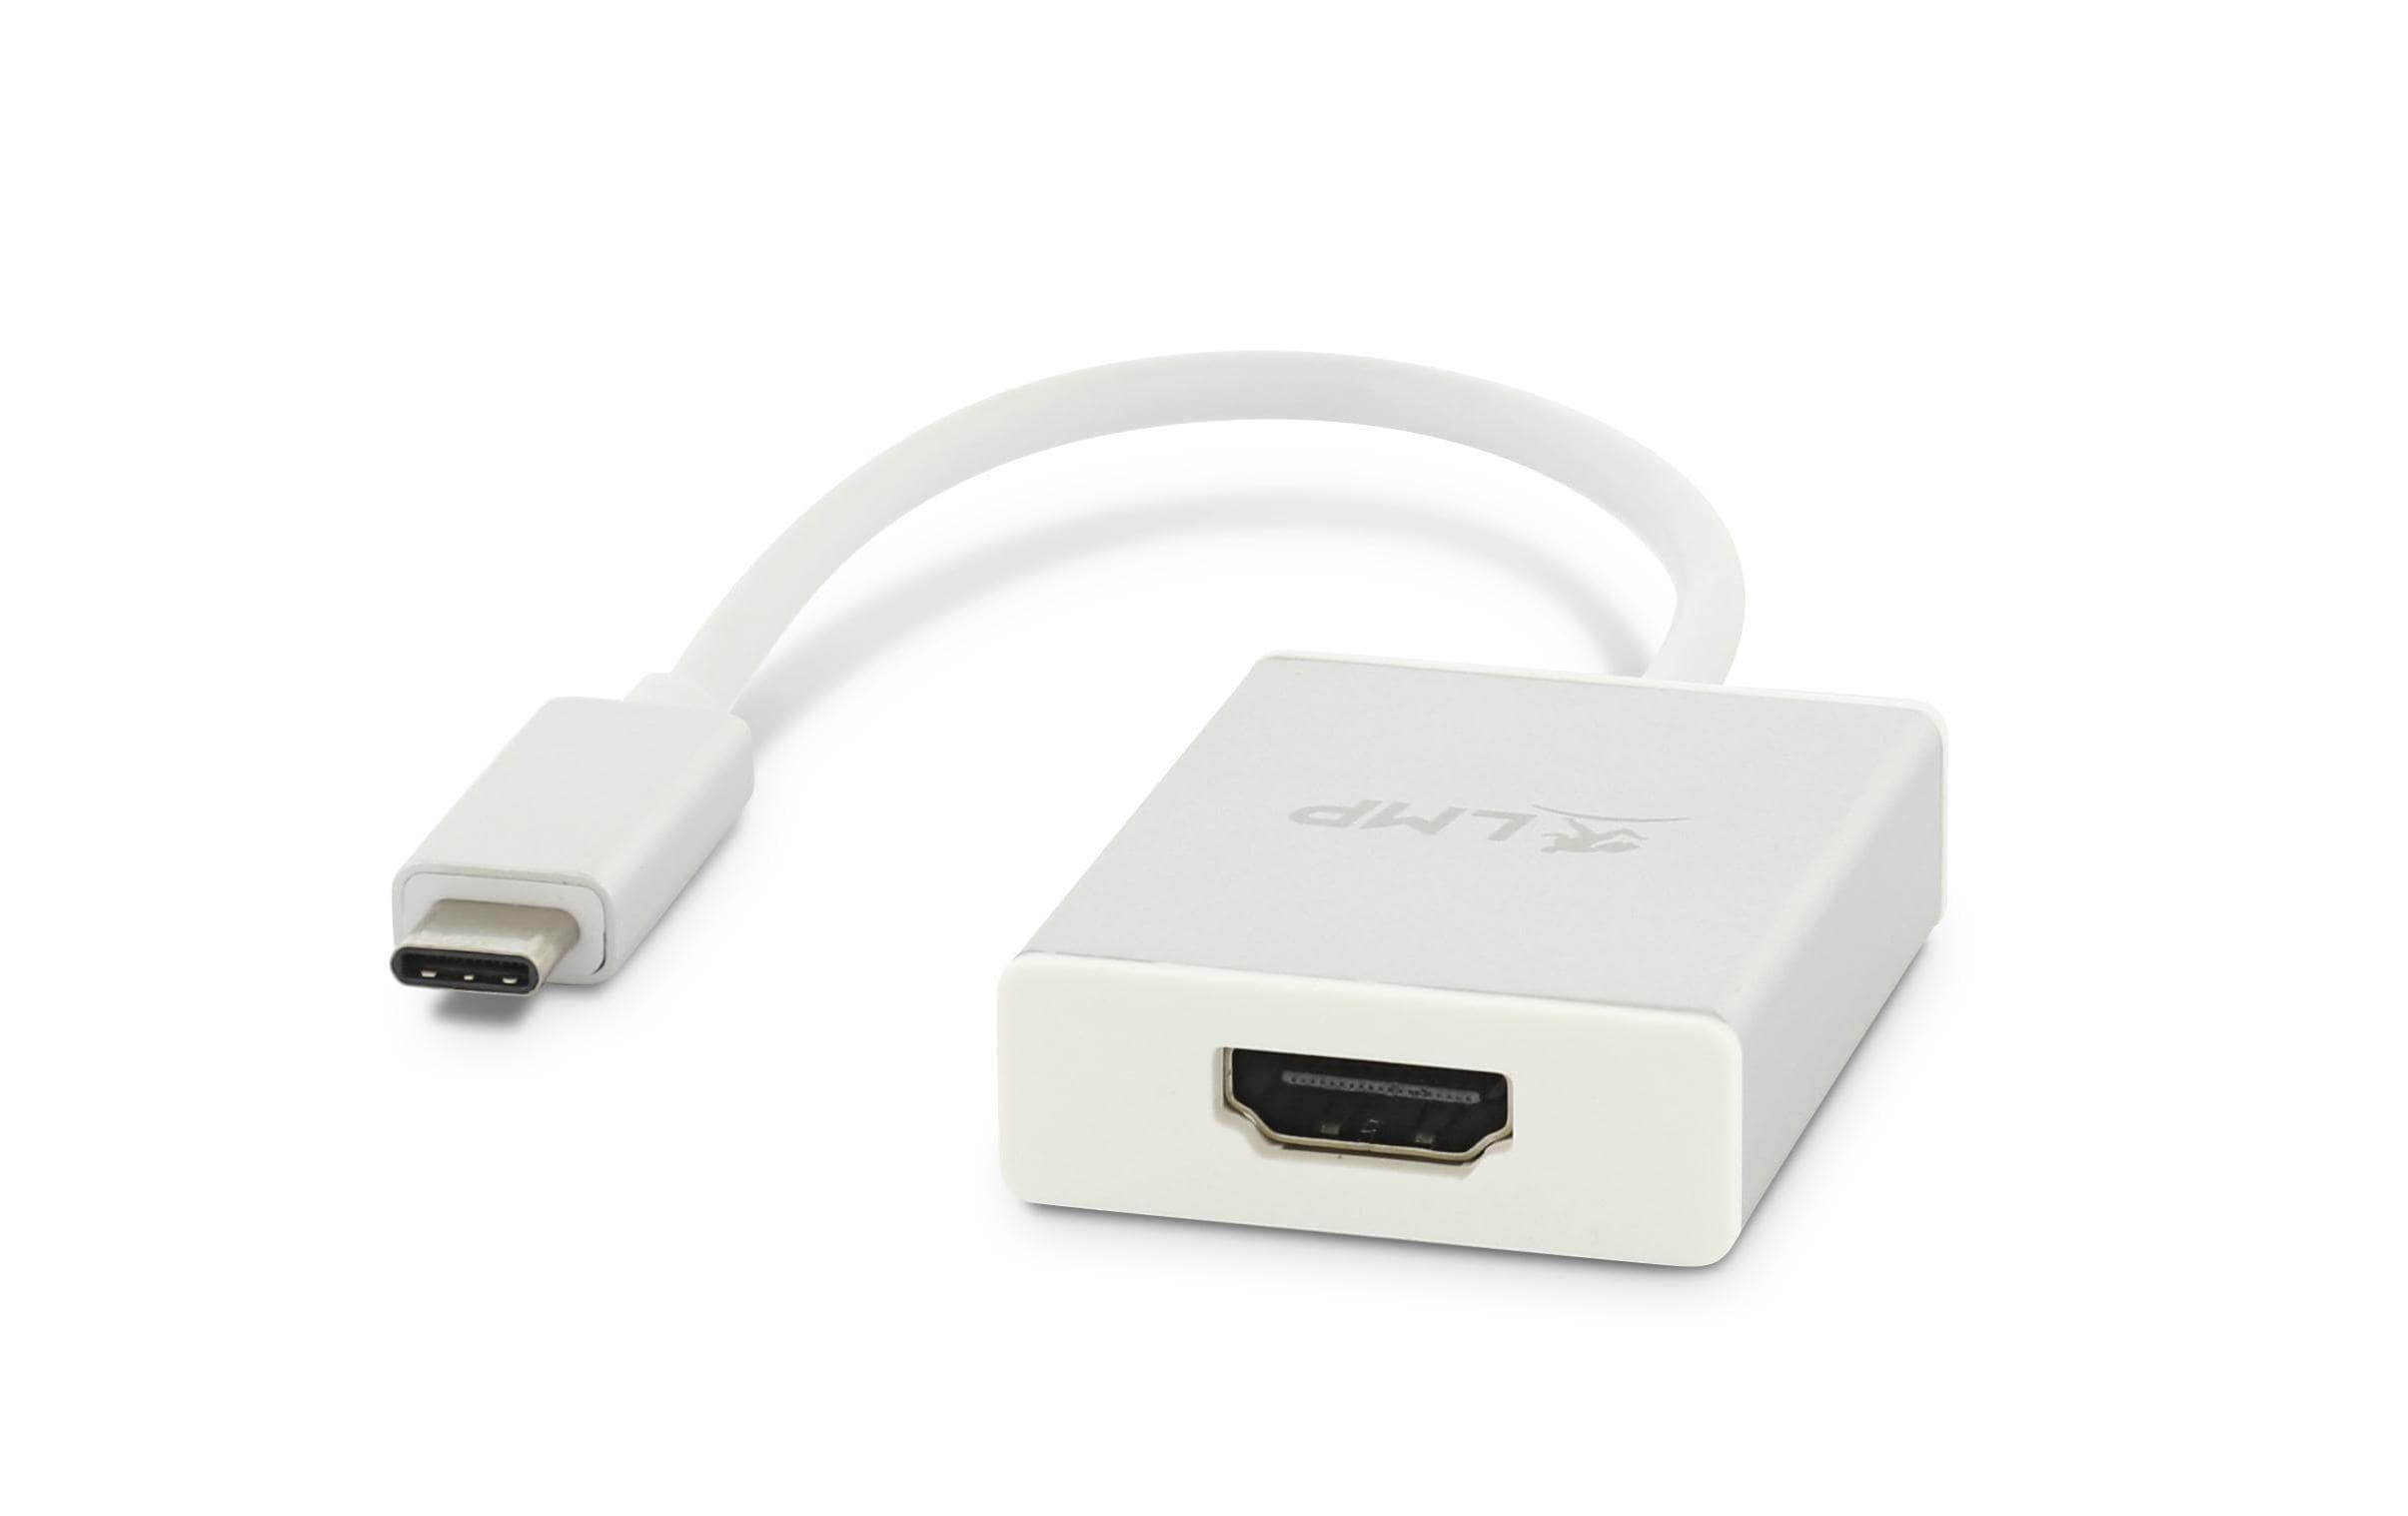 LMP USB-C 3.1 zu HDMI 2.0 Adapter